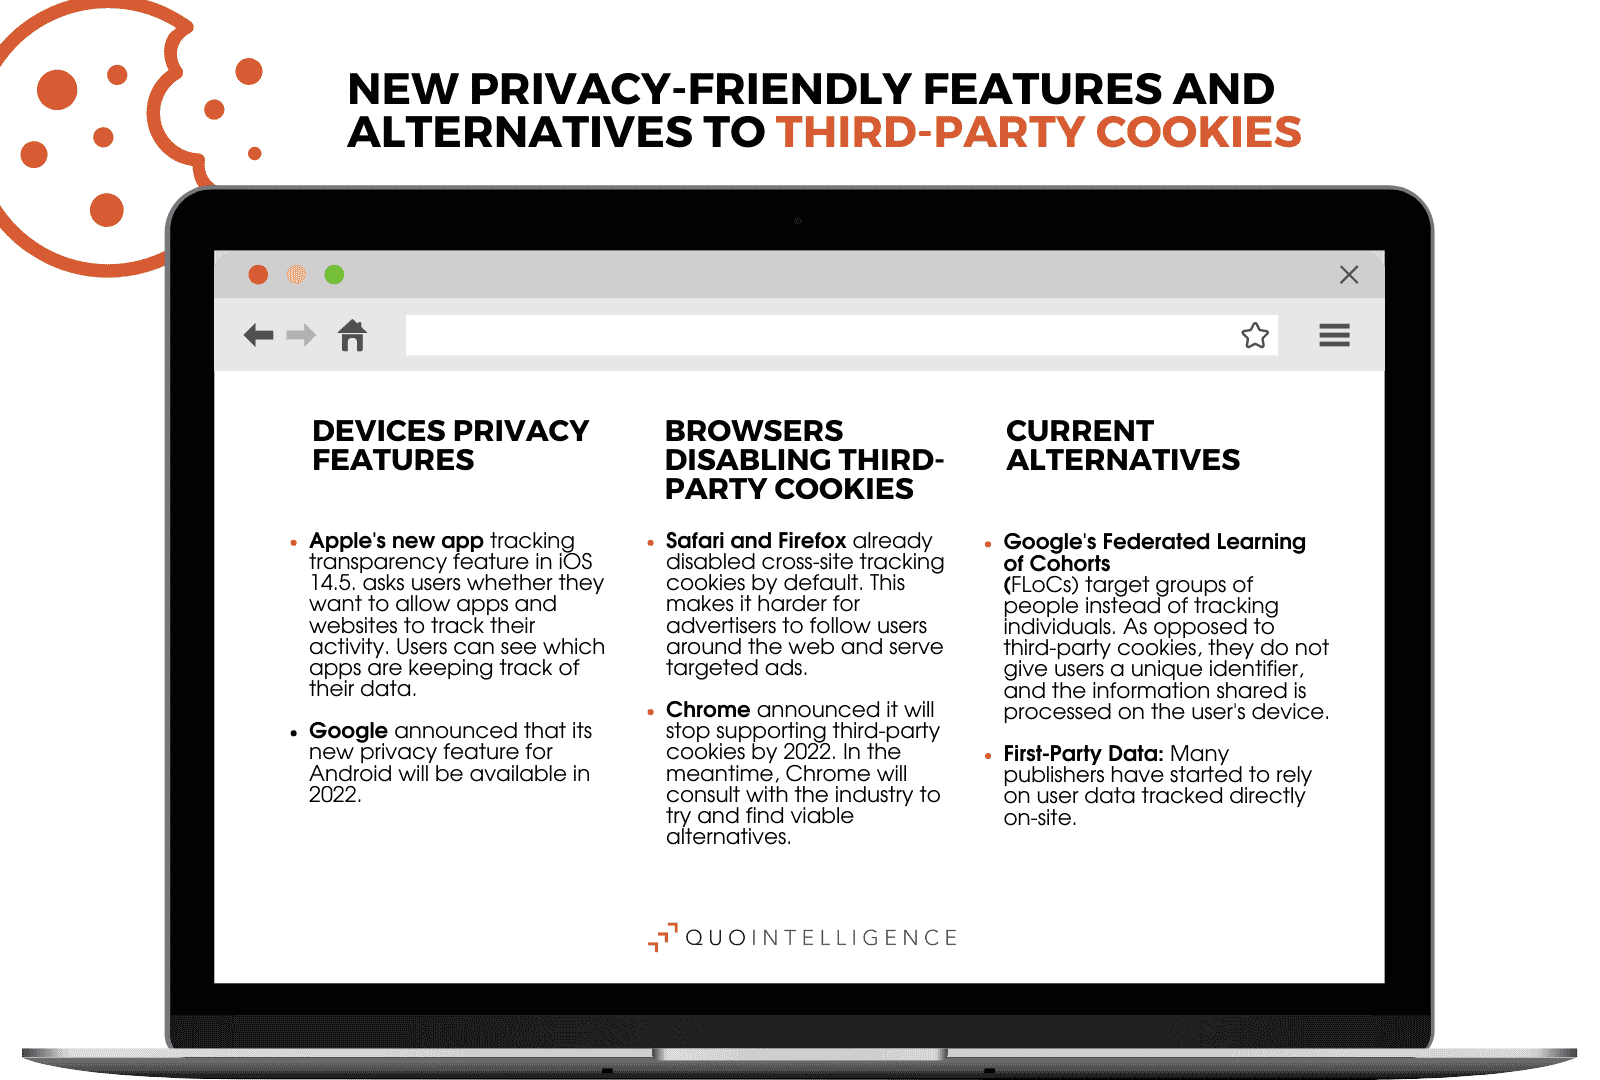 Les propriétaires de sites peuvent choisir parmi de nombreux signaux de suivi alternatifs respectueux de la vie privée